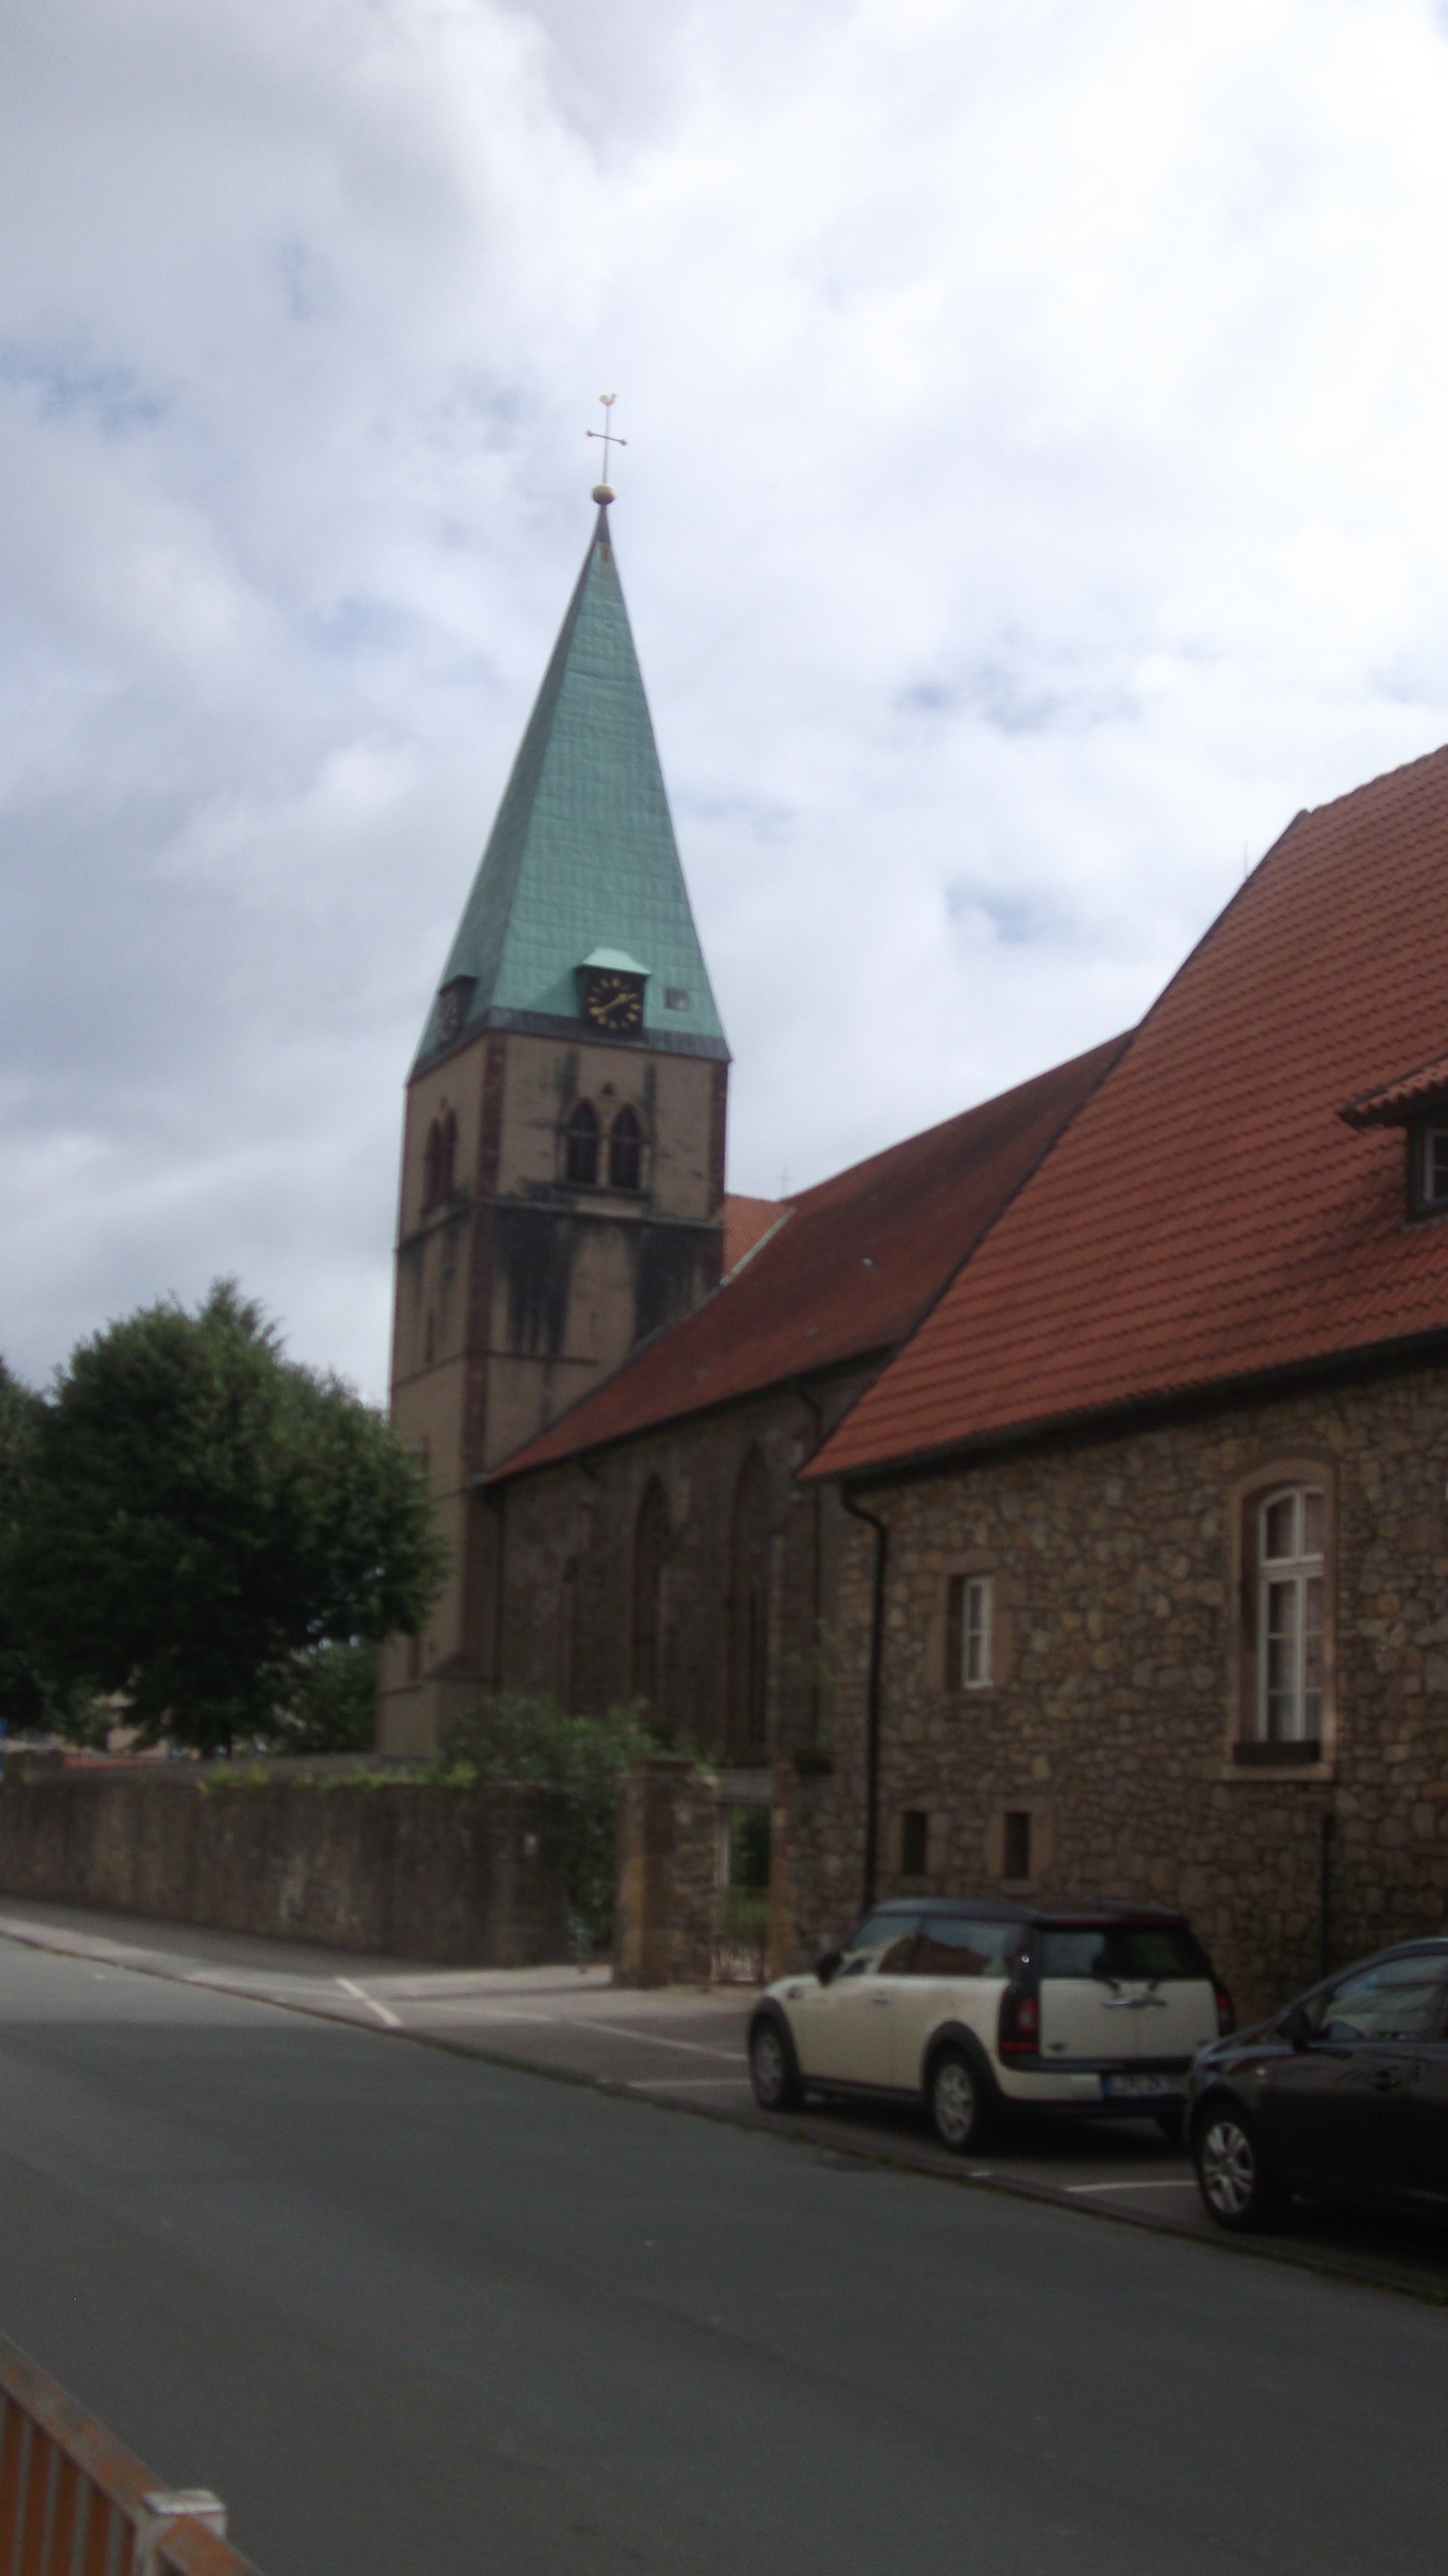 Bild 33 Kirche St. Marien Lemgo - Evangelisch-lutherische Kirchengemeinde St. Marien Lemgo in Lemgo